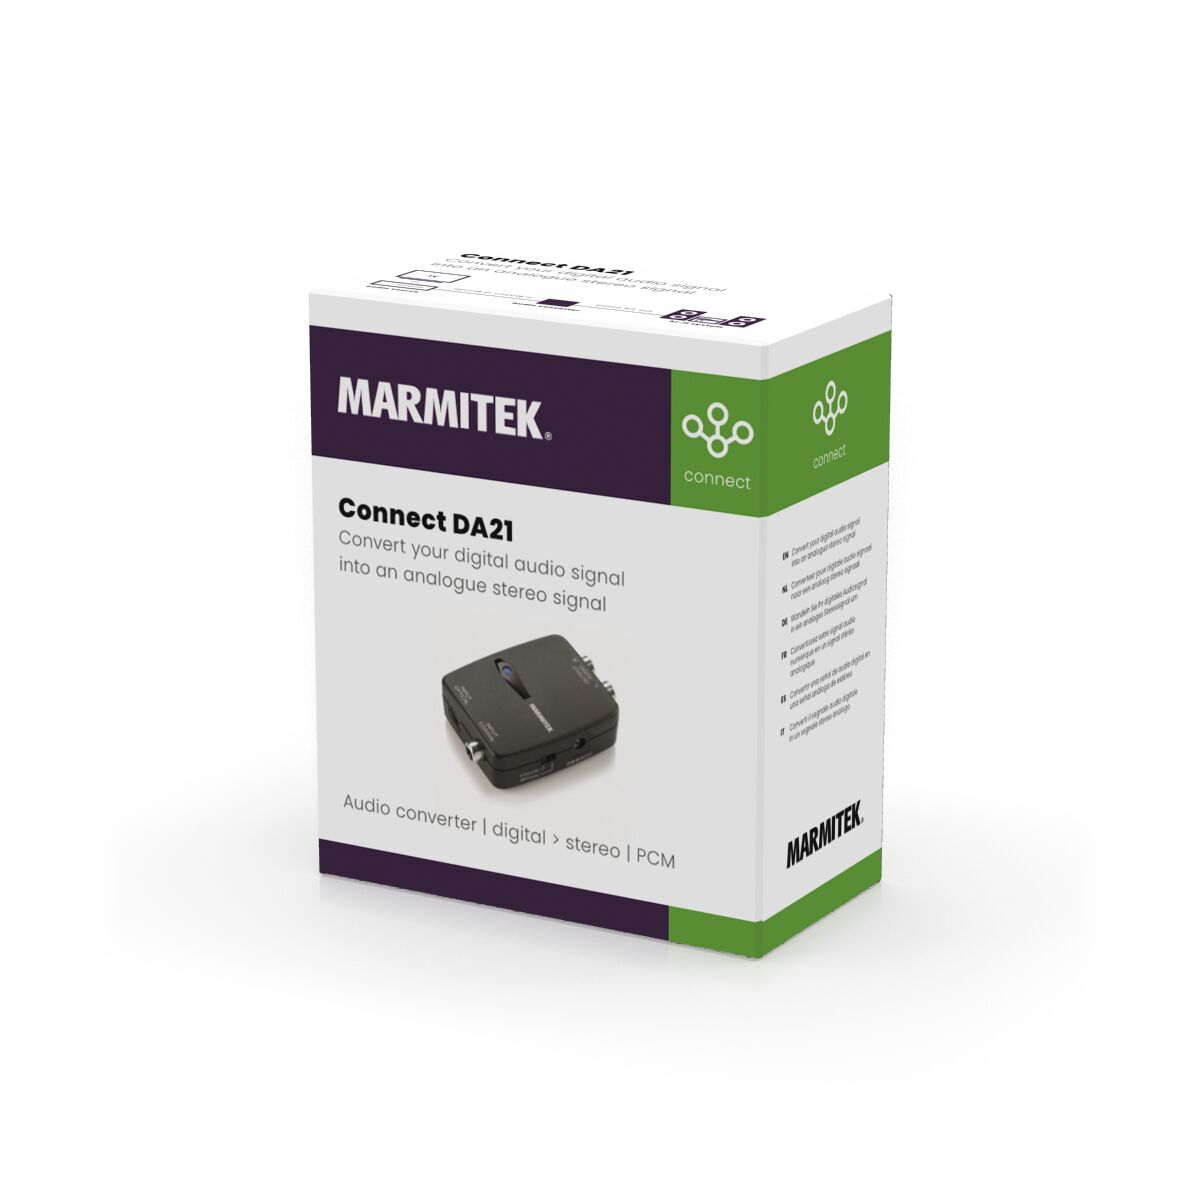 Connect DA21 - Audio converter - Digital to analog - 3D Packshot Image | Marmitek